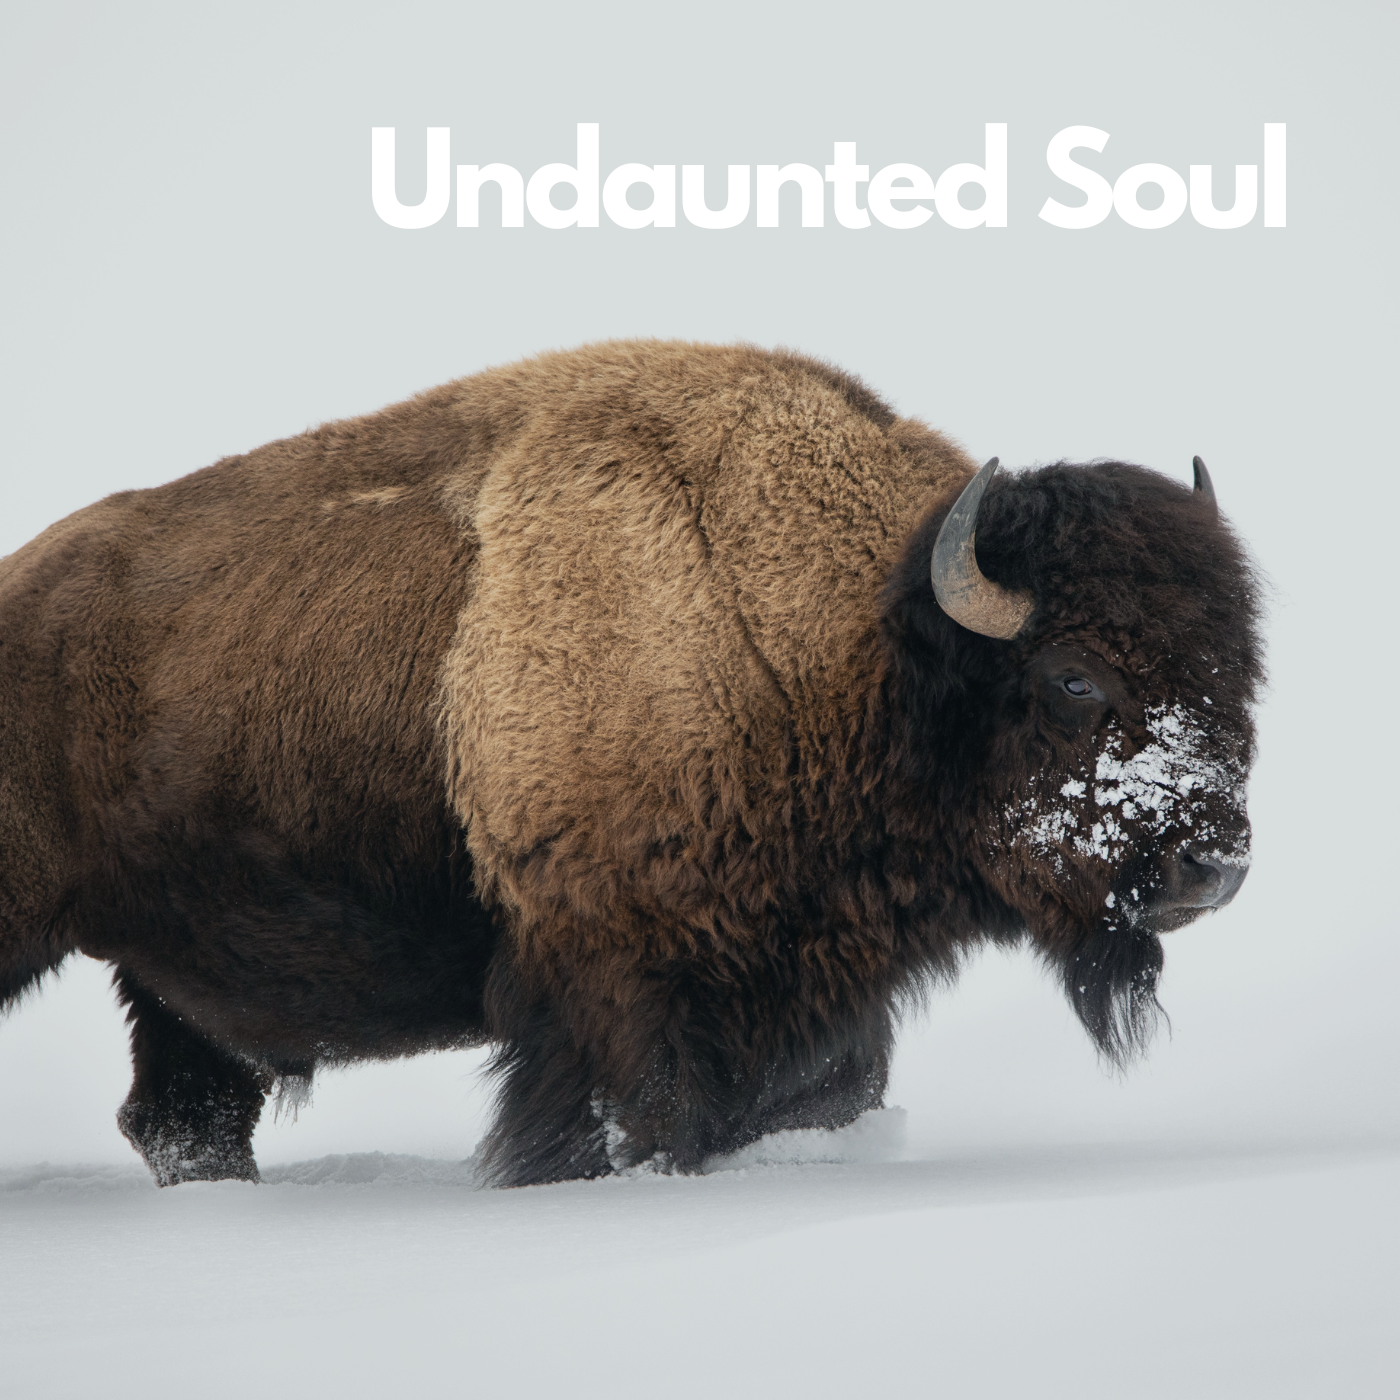 Undaunted Soul | Chelsea Olson | Episode 31 Image